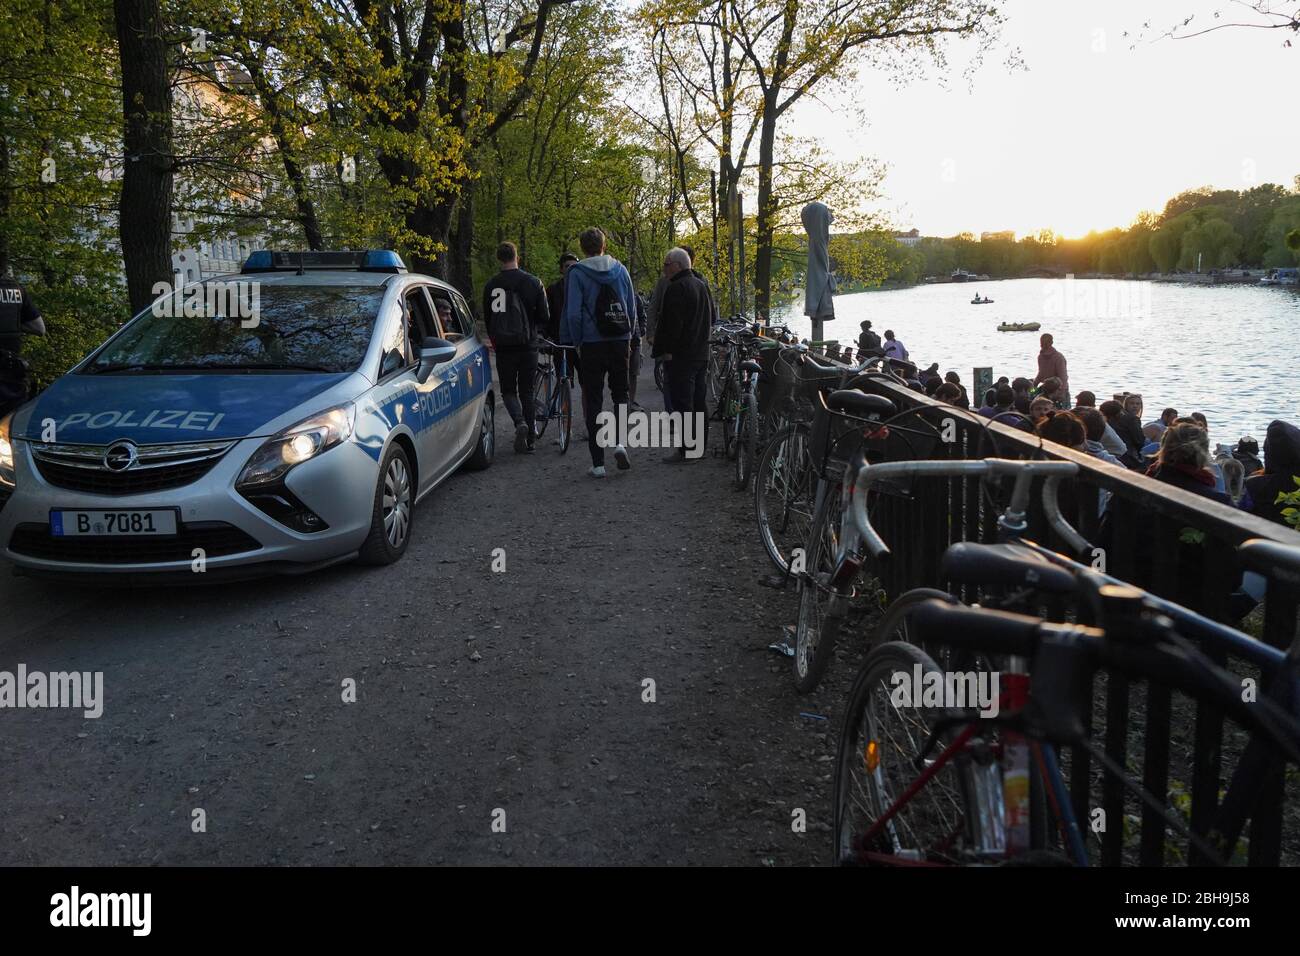 Berlín, Alemania. 24 de abril de 2020. La policía está emitiendo reprimendas en la ajetreada orilla del Landwehrkanal. Crédito: Jörg Carstensen/dpa/Alamy Live News Foto de stock